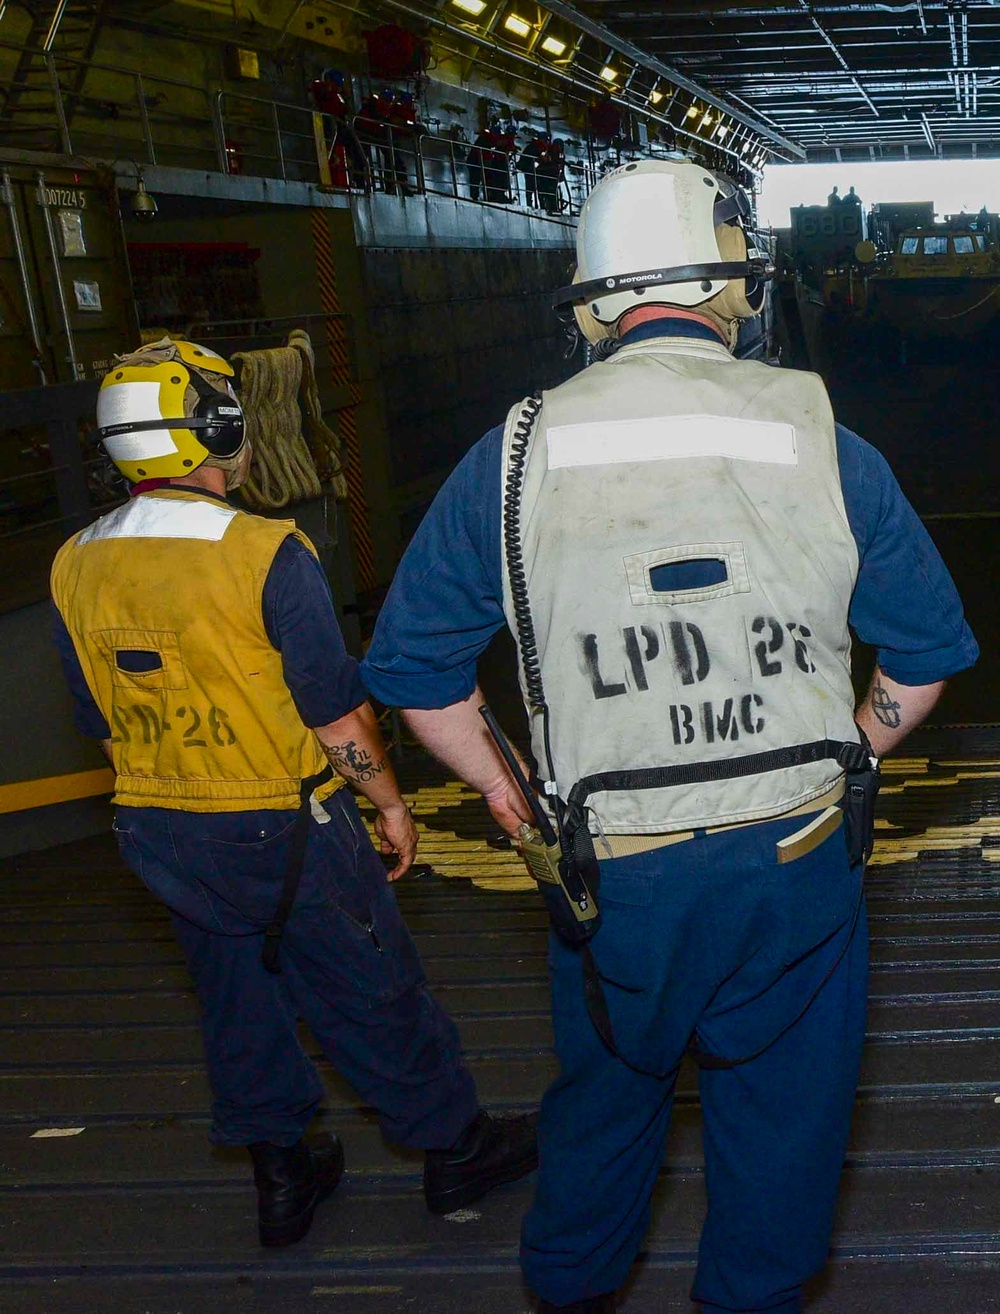 USS John P. Murtha (LPD 26) Well Deck Ops